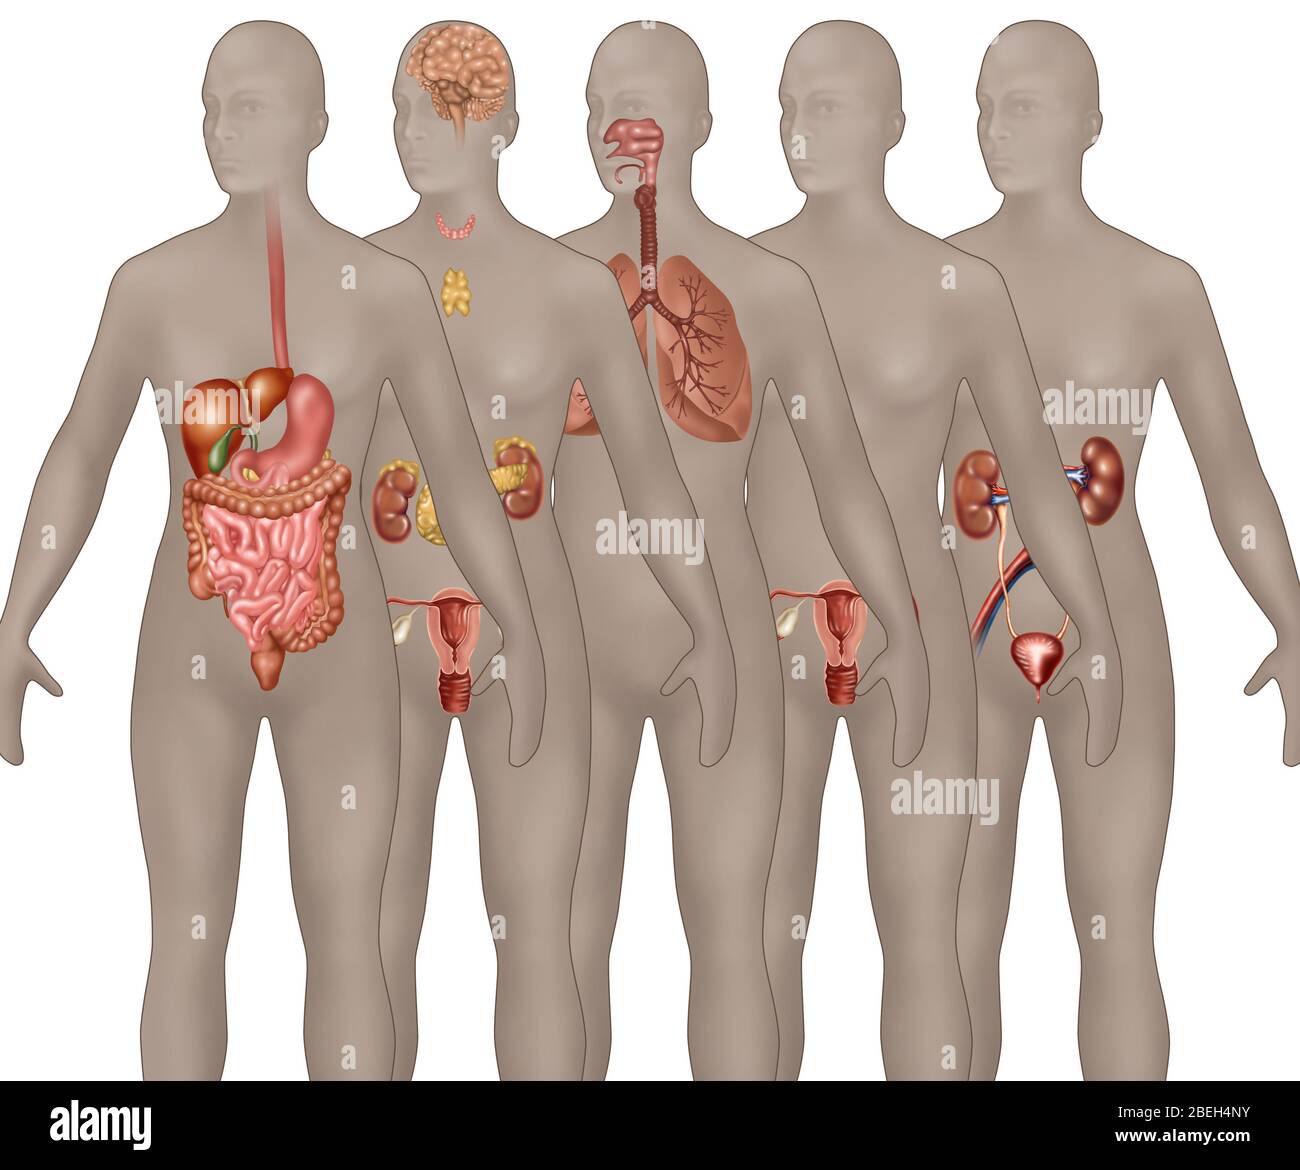 Sistemi di organi illustrati nell'anatomia femminile. Dal primo piano allo sfondo sono rappresentati: Apparato digerente, apparato endocrino, apparato respiratorio, apparato riproduttivo maschile e apparato urinario. Foto Stock